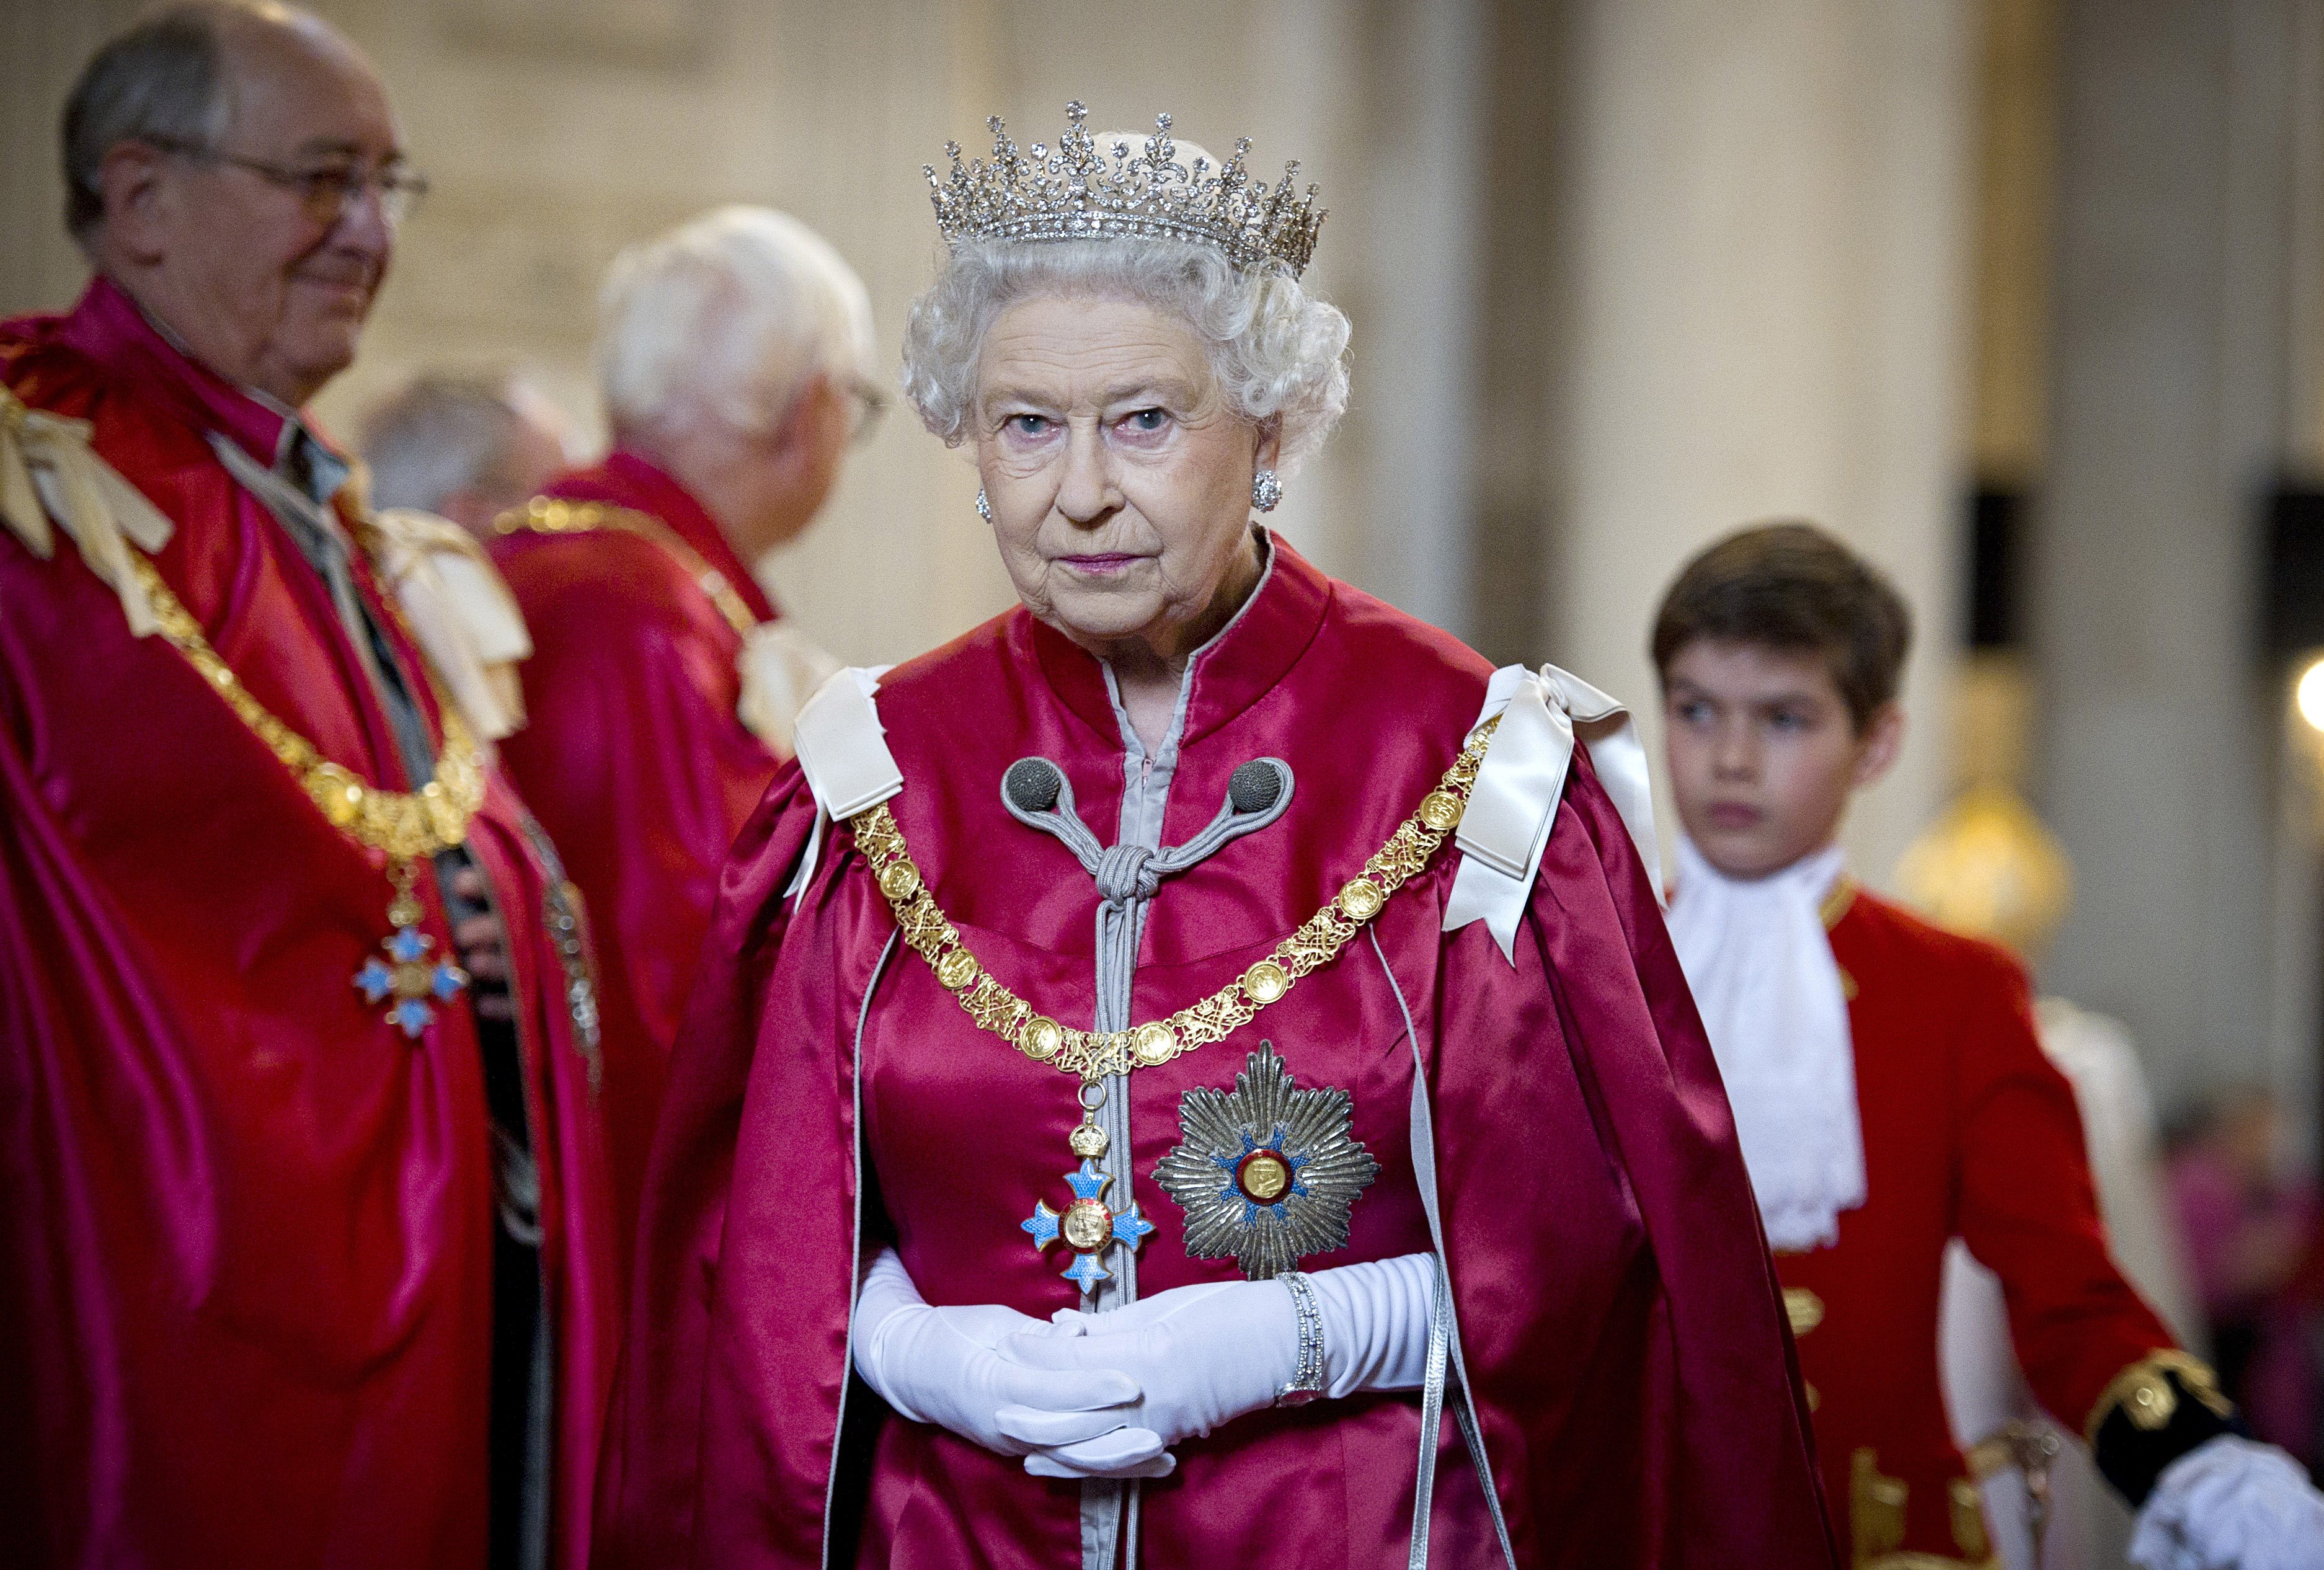 Königin Elizabeth II. bei der Verleihung des Order of the British Empire am 7. März 2012 in London, England | Quelle: Getty Images